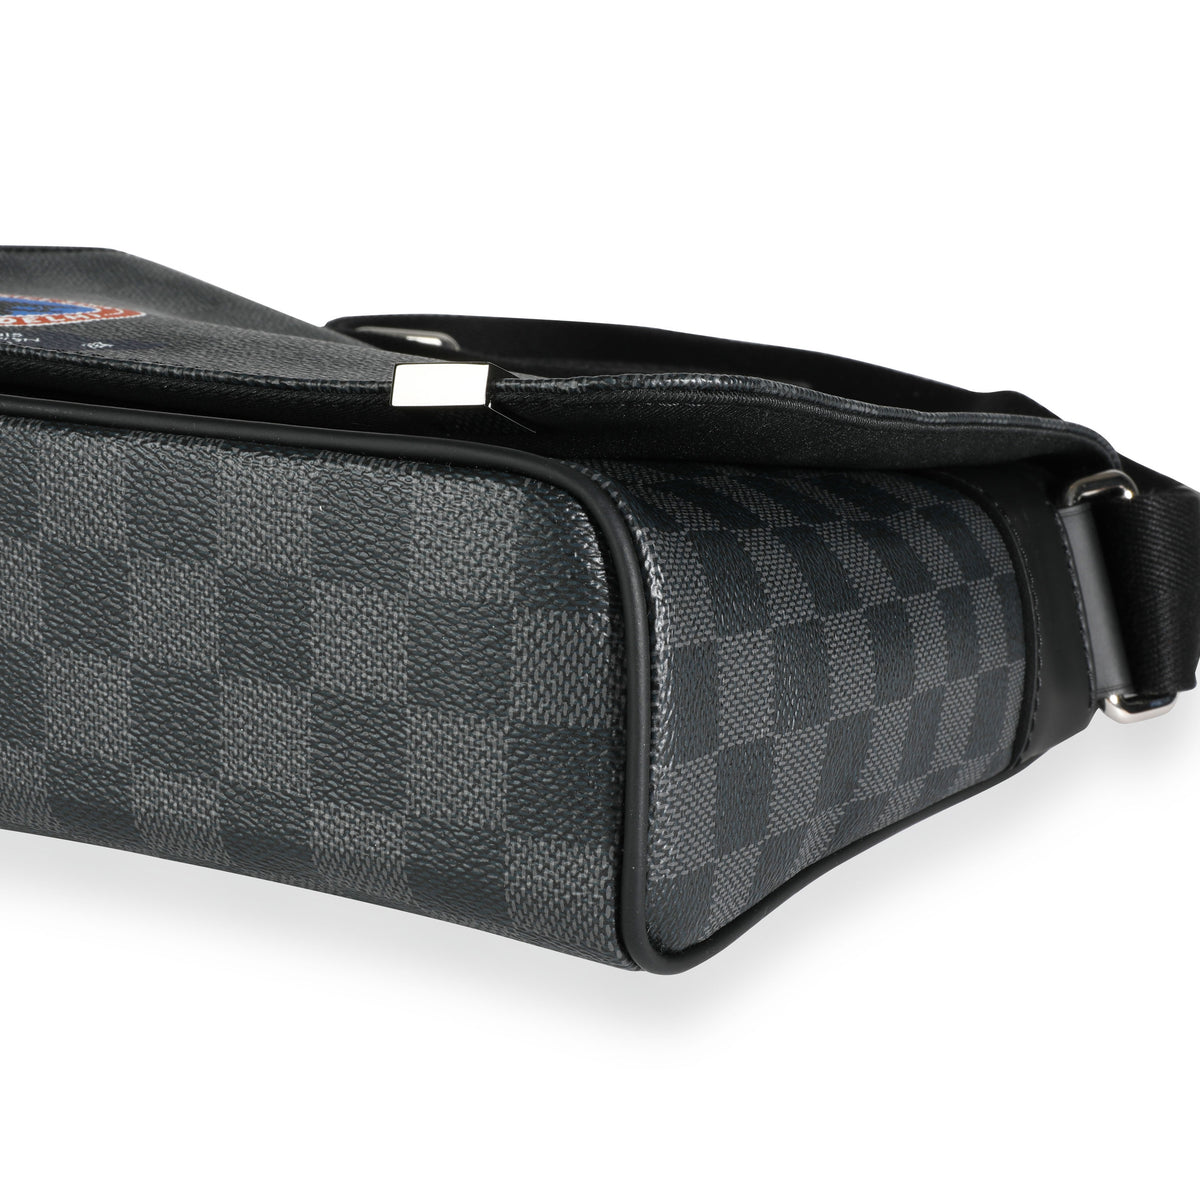 Louis Vuitton Damier Graphite District GM N41271 Shoulder Bag #11347